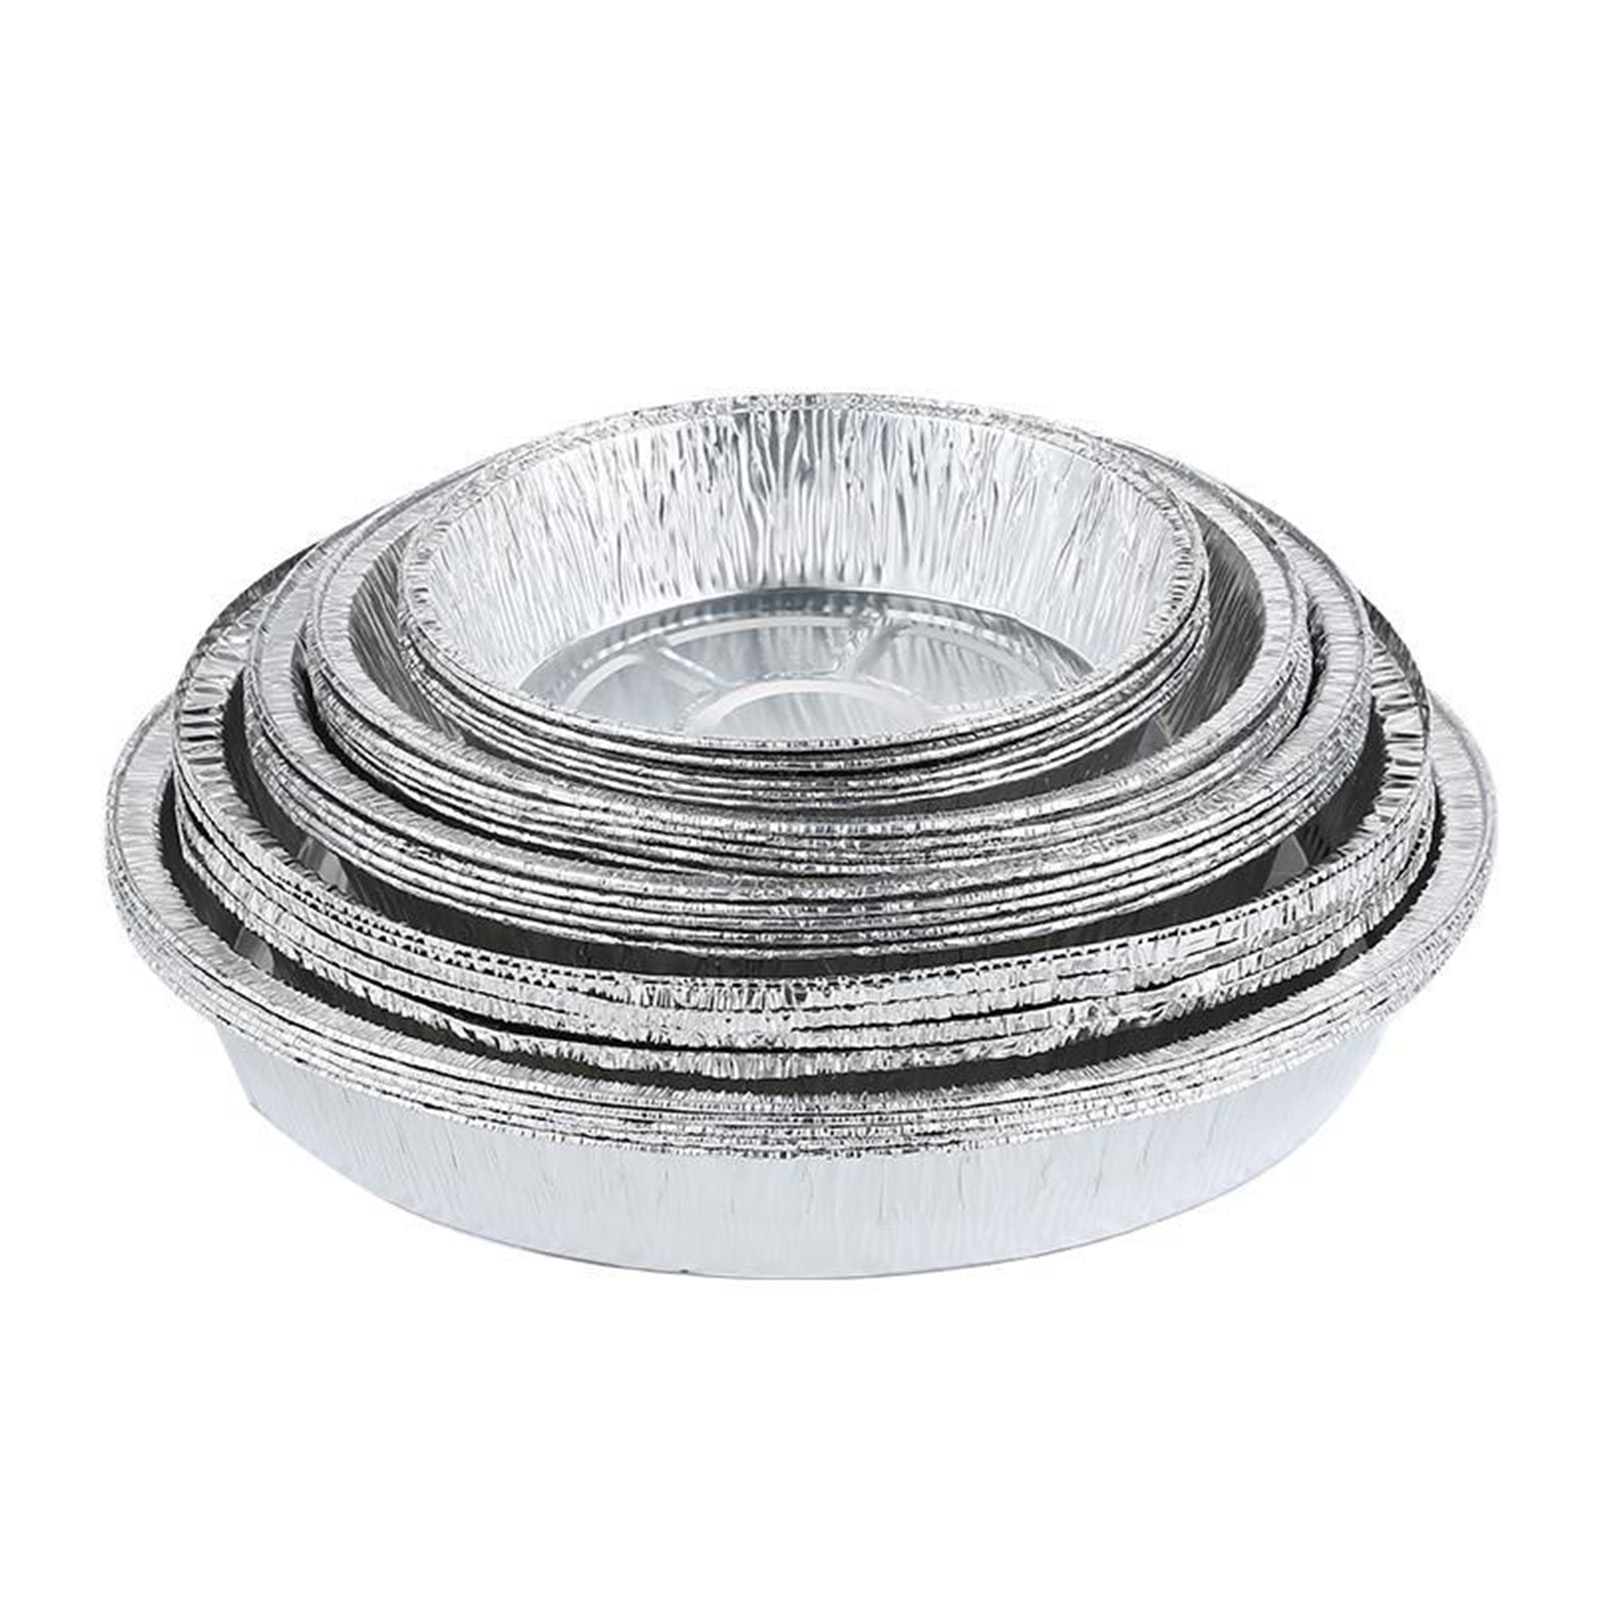 6 Zoll/7 Zoll runde gesunde Aluminiumfolie -Pfanne Lebensmittelbehälter Praktische Folienschale zum Backen/Aufbewahren/Wiedererwärmen/Mahlzeitenzubereitung